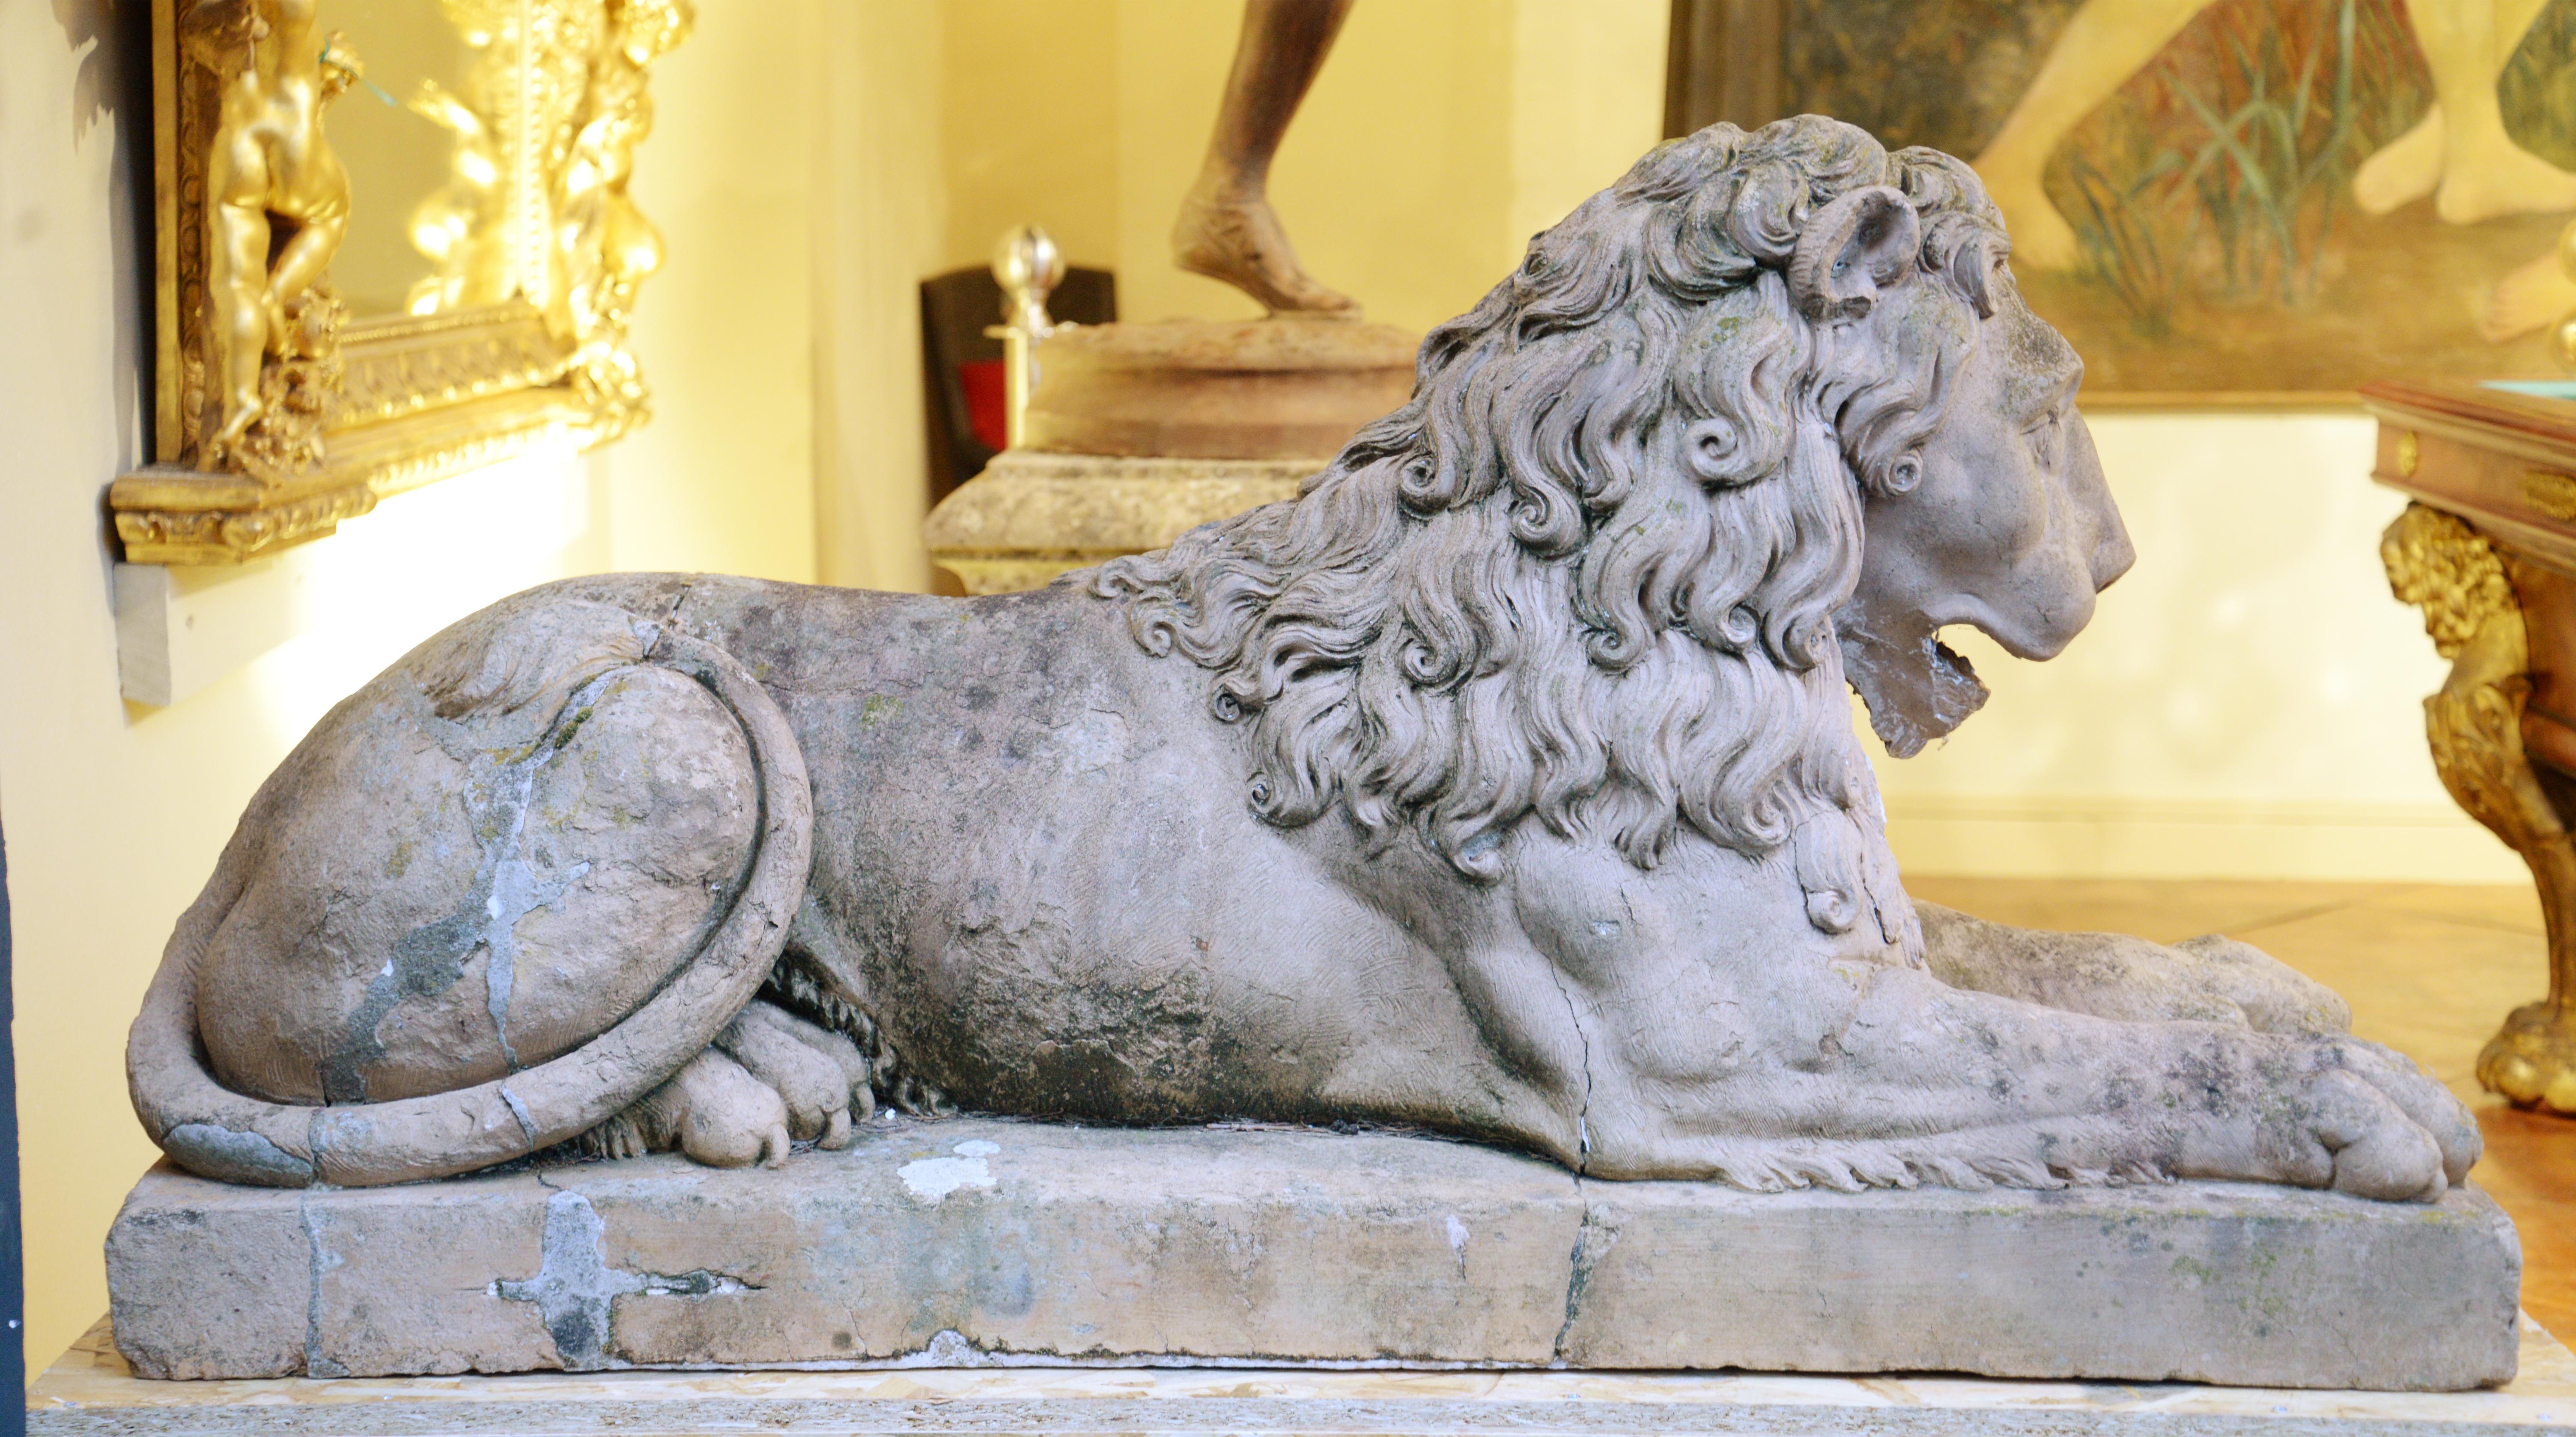 Dieses auf Sockeln ruhende Terrakotta-Löwenpaar wurde im 18. Jahrhundert hergestellt.

Diese Terrakotta-Löwen basieren auf antiker Ikonographie und sind vom 17. und 18. Jahrhundert inspiriert. Der liegende Löwe ist eine der künstlerischen